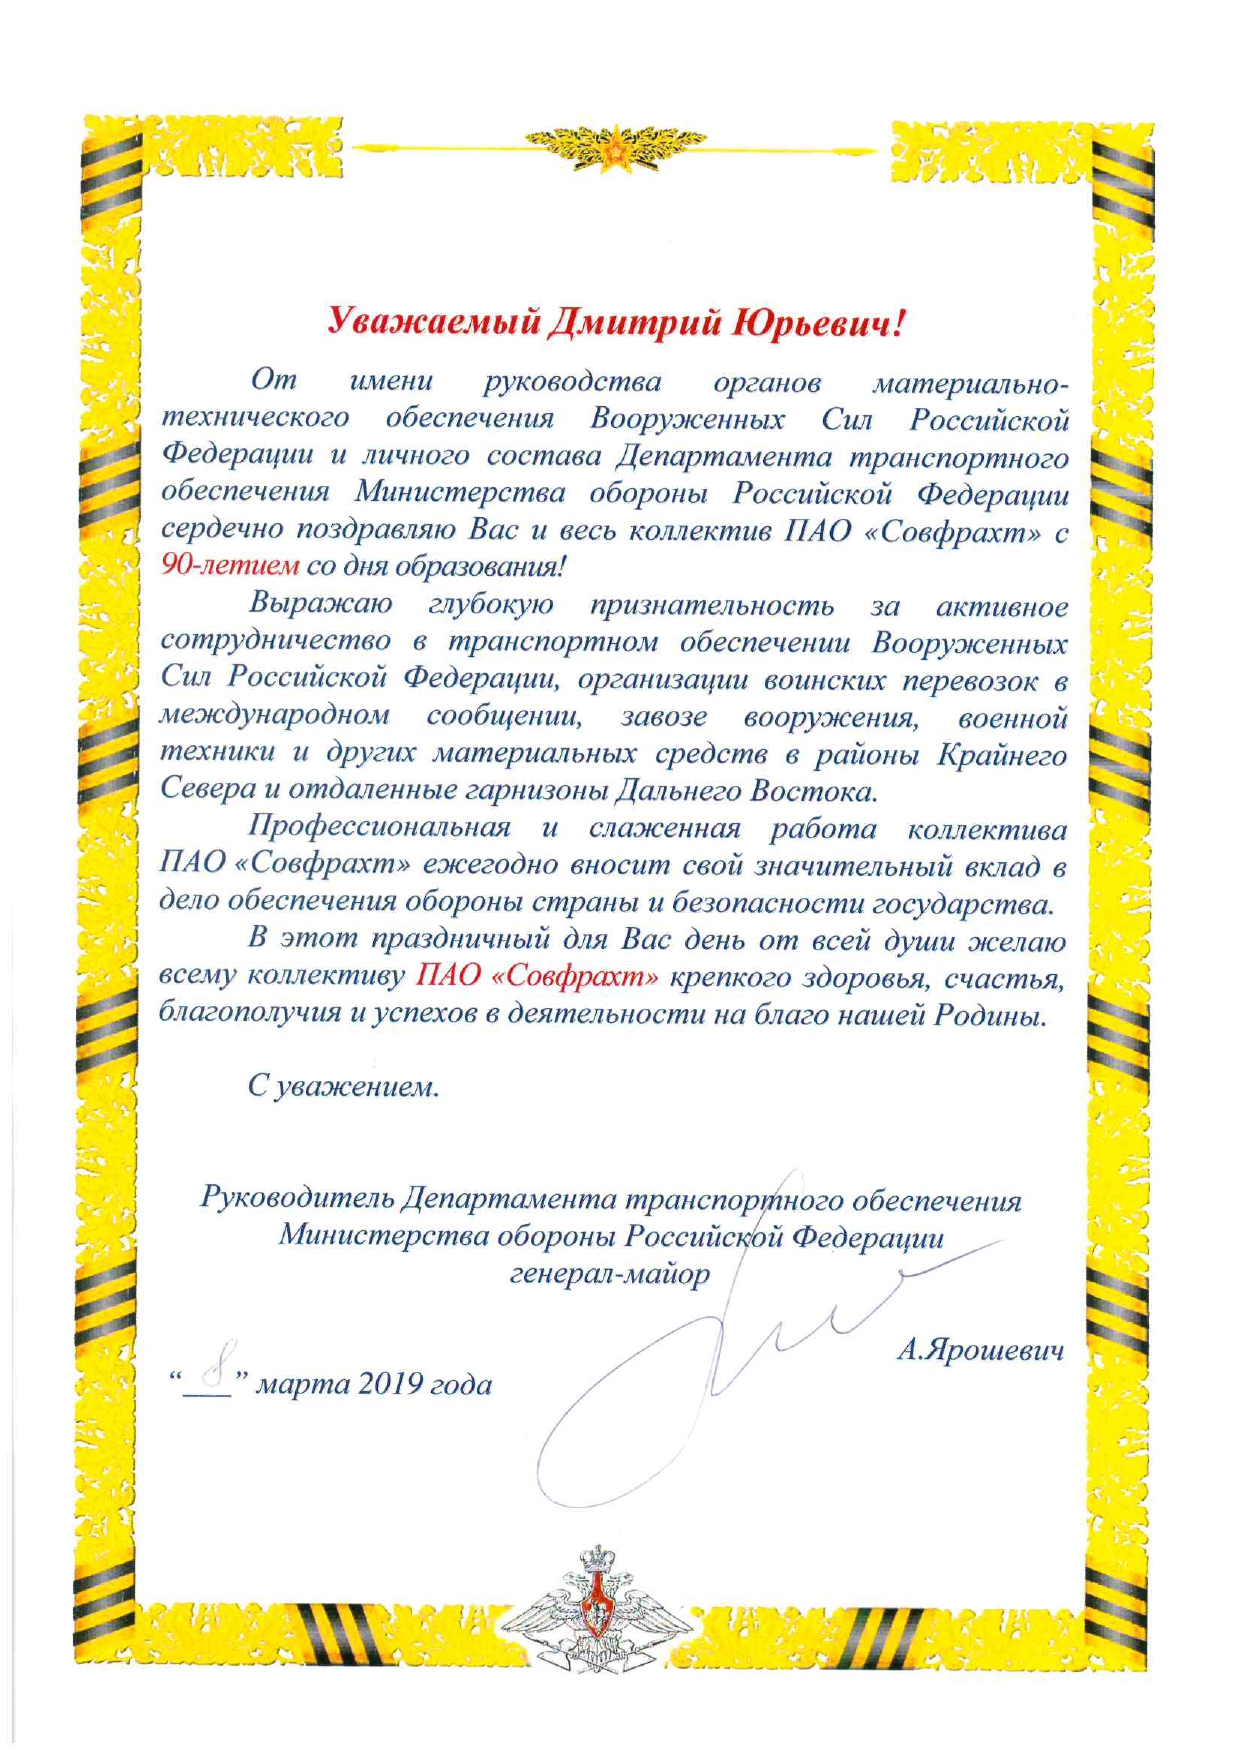 Поздравление с 90-летием от Департамента транспортного обеспечения Министерства обороны РФ в лице генерал-майора А.Ярошевича